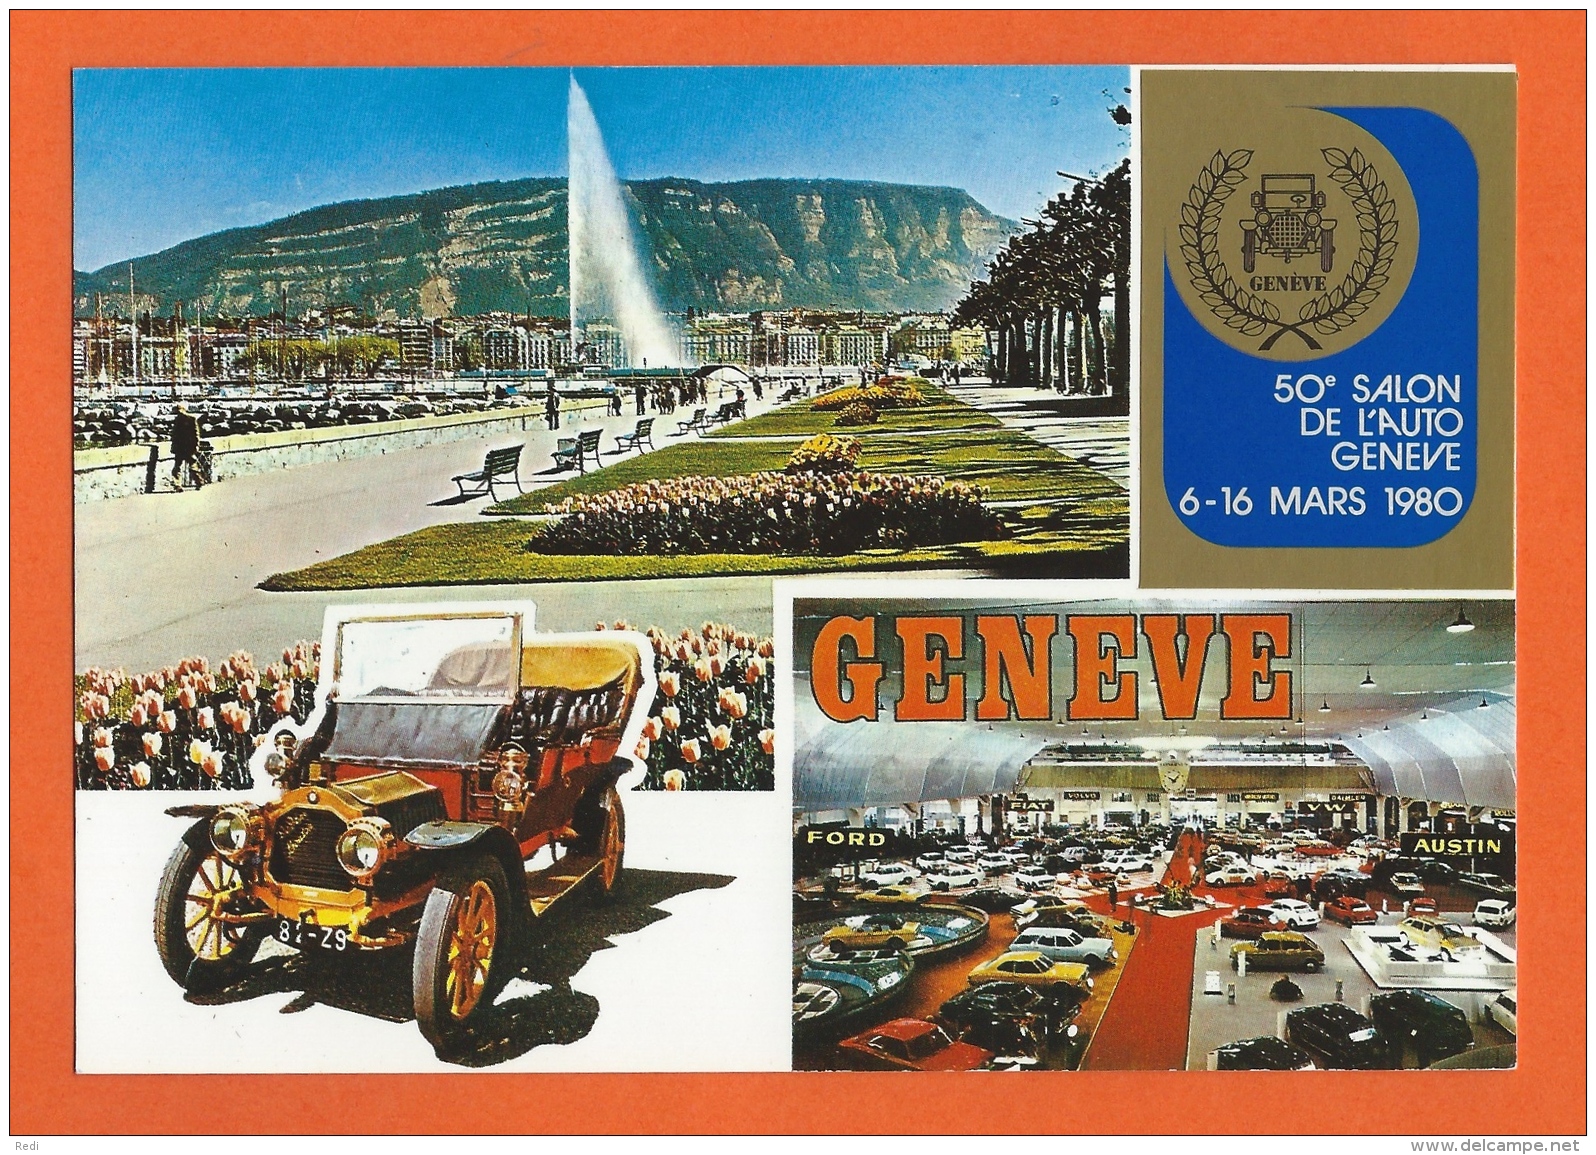 50e SALON DE L'AUTO GENÈVE 6-16 MARS 1980 - Genève - Salon International De L'Automobile - Voitures De Tourisme